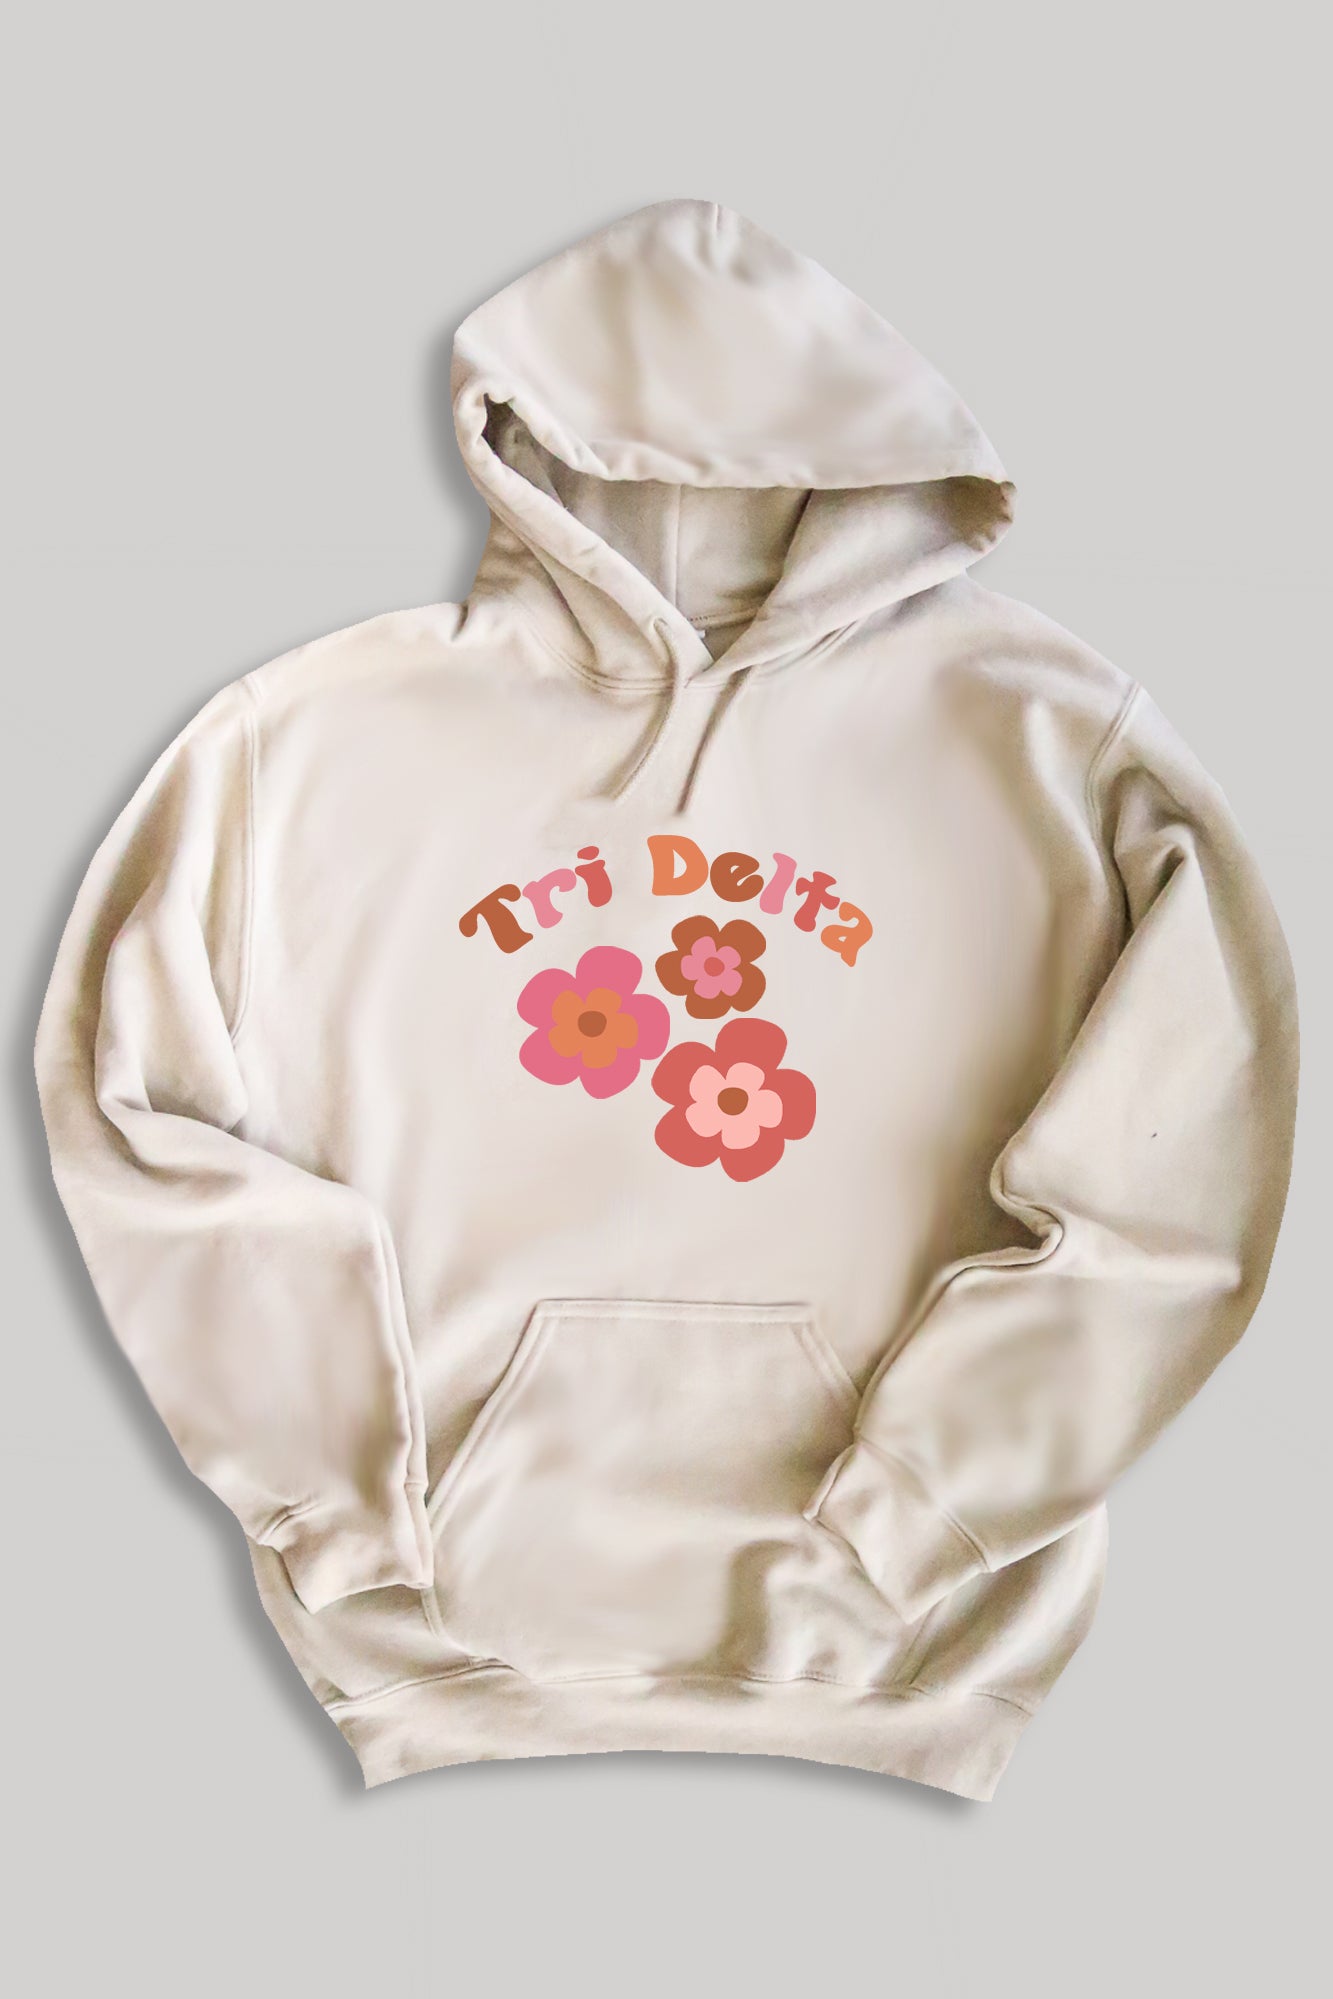 Groovy hoodie - Tri Delta